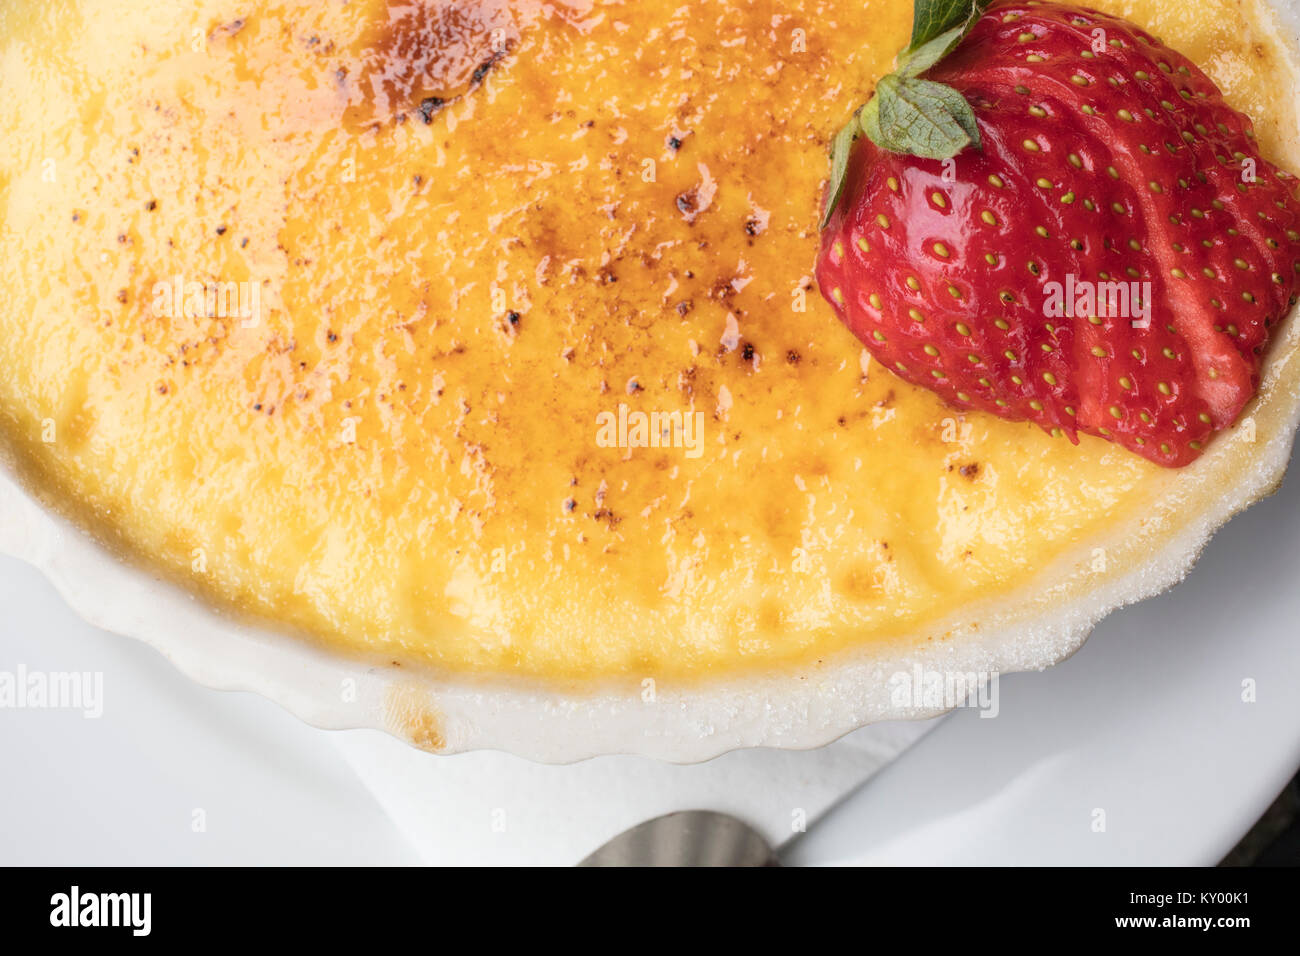 Crème dessert sucré et crémeux faite d'oeufs, le lait et le sucre surmonté d'une fraise en tranches dans une assiette blanche Banque D'Images